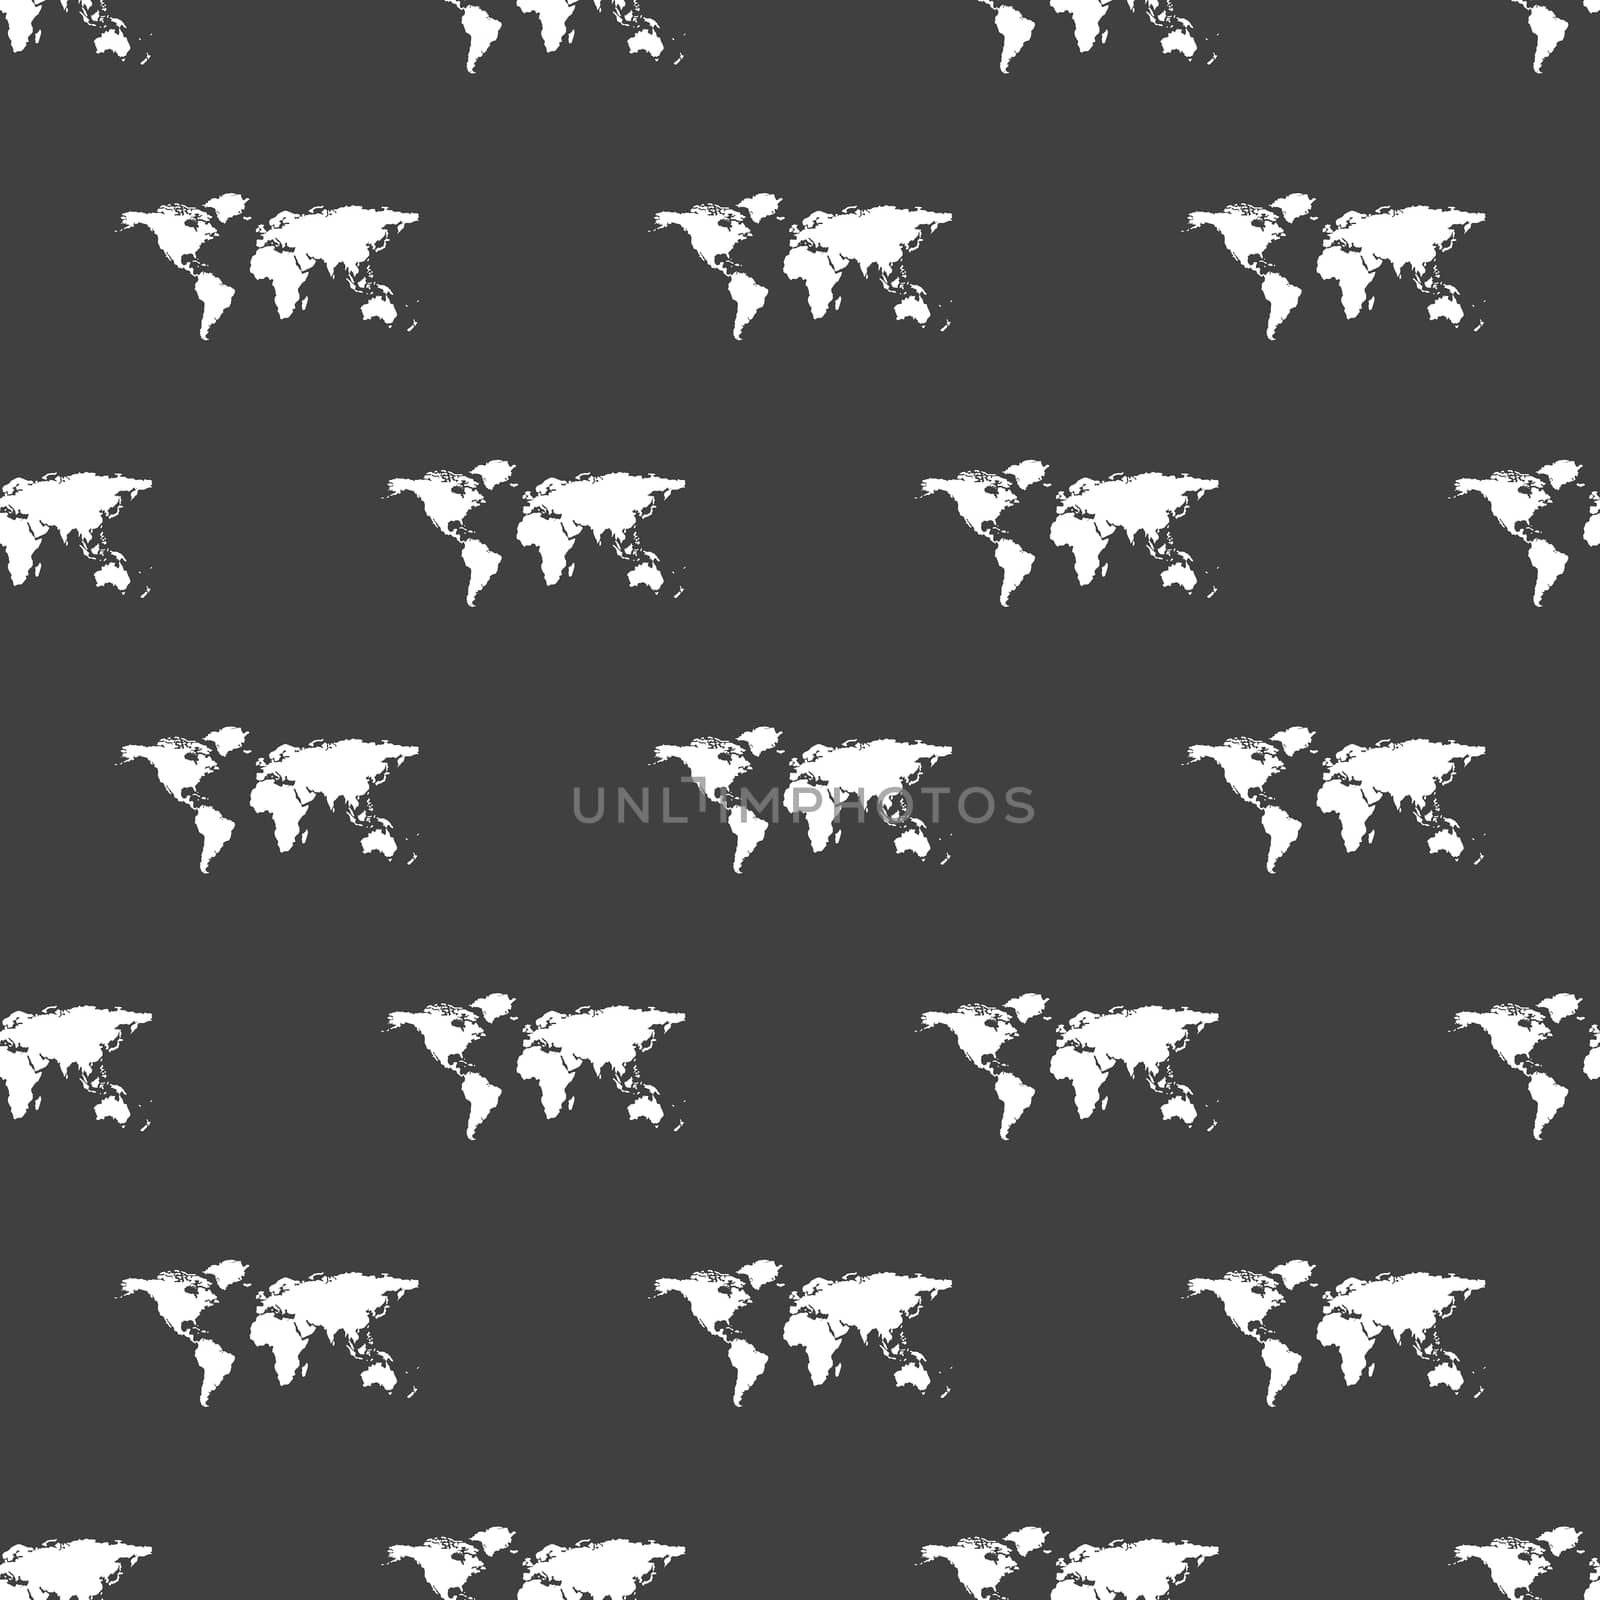 World map web icon. flat design. Seamless gray pattern.